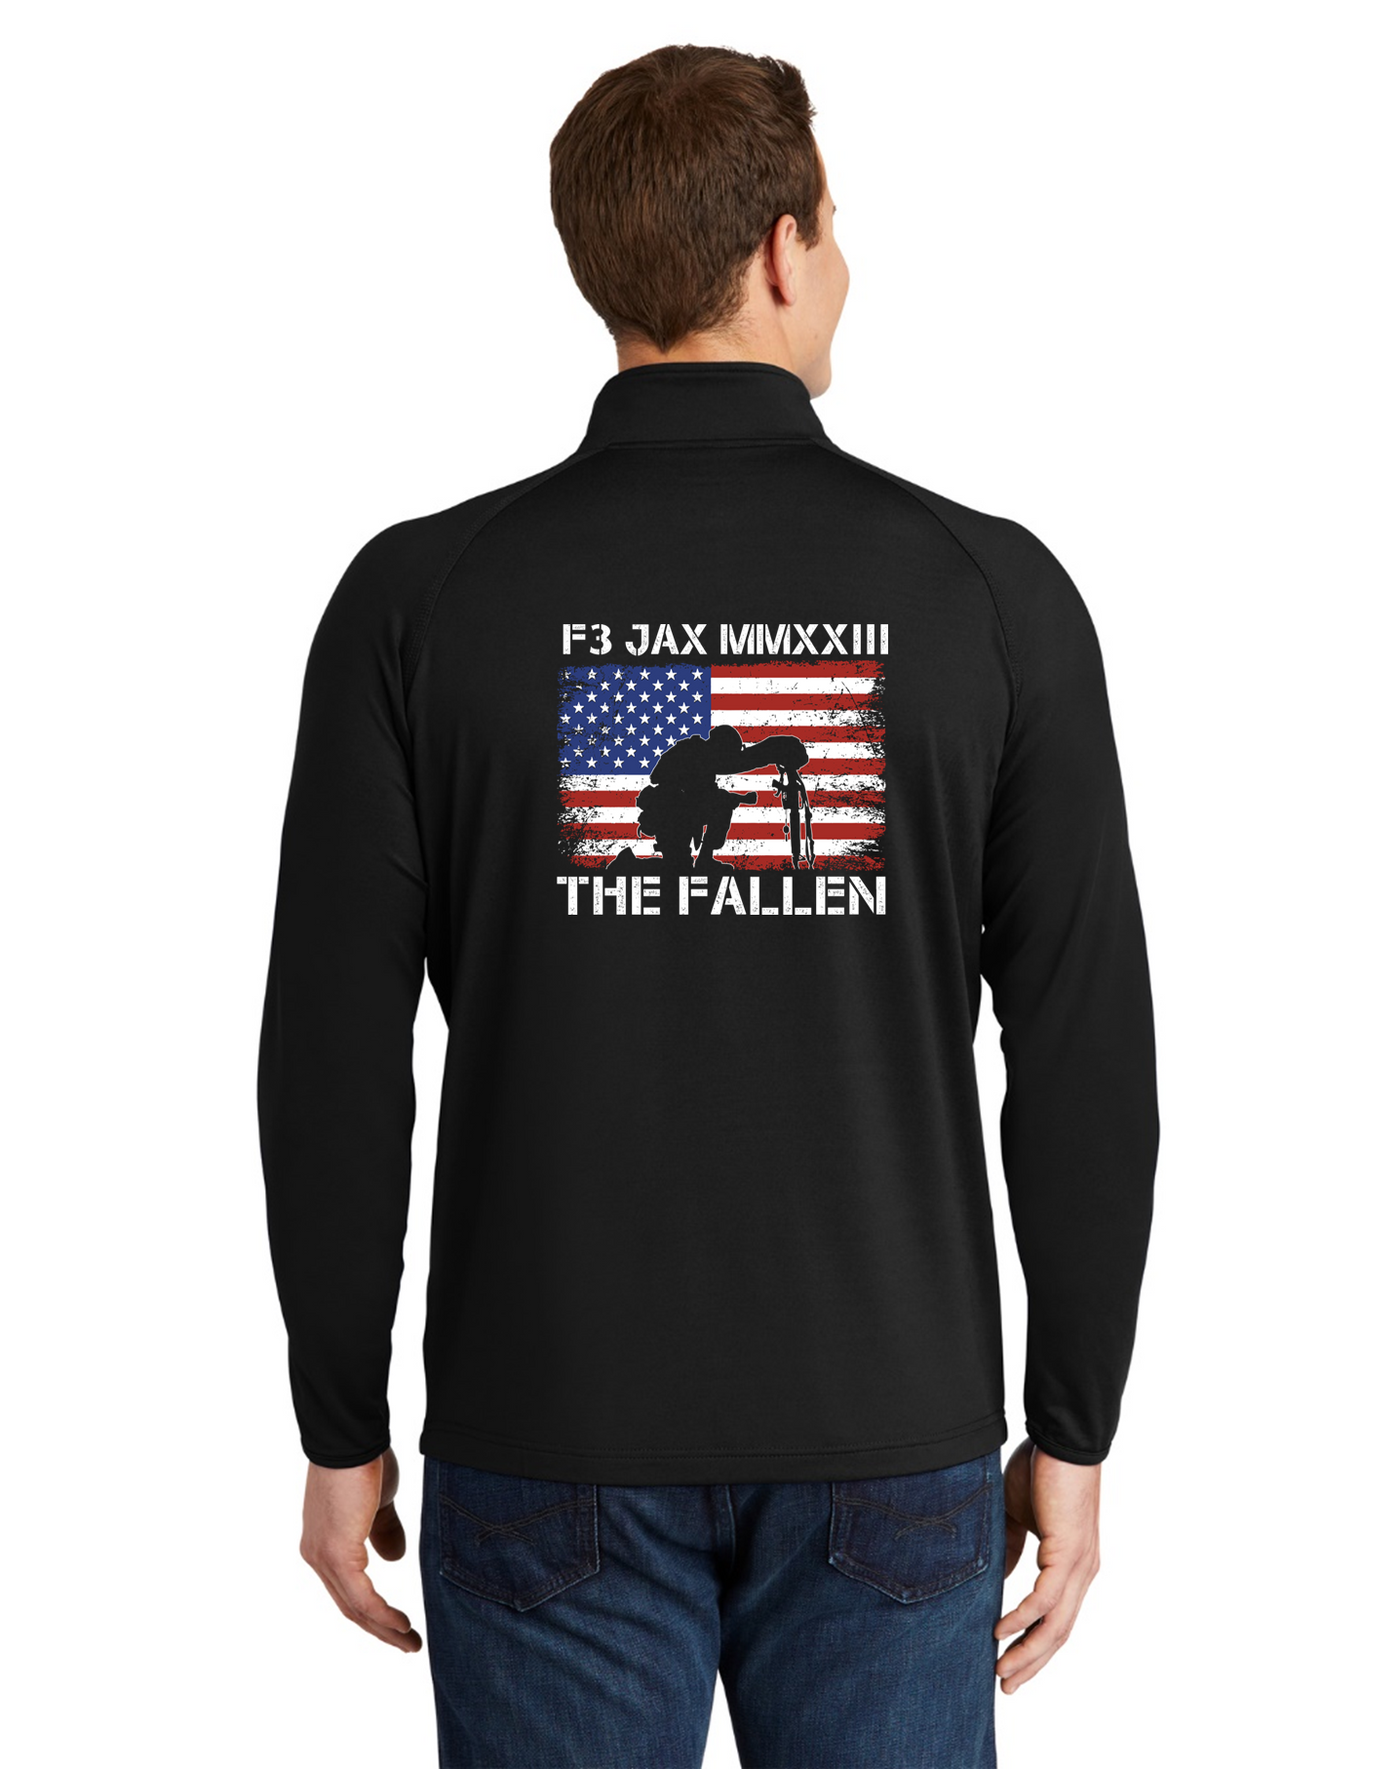 F3 JAX XXIII The Fallen Pre-Order April 2023